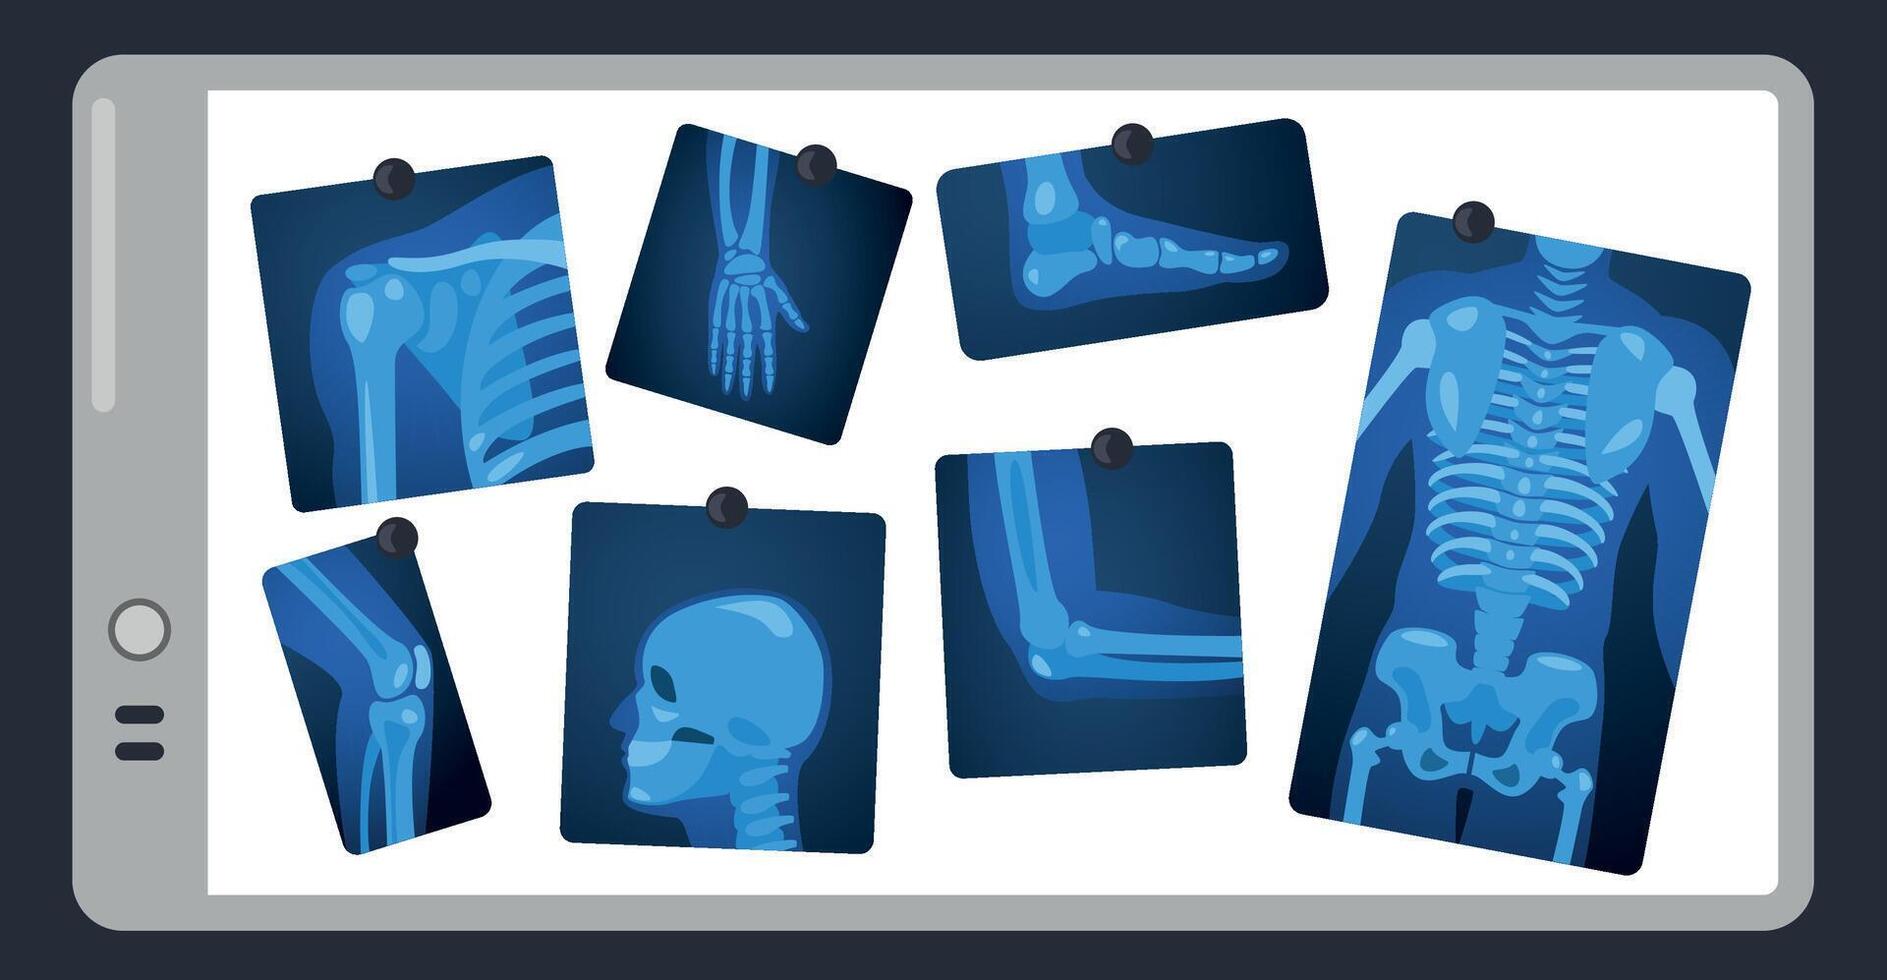 X straal Aan dokter scherm. menselijk skelet onderdelen Aan chirurgie licht kussen, lichaam onderdelen medisch röntgenstraal concept. vector illustratie